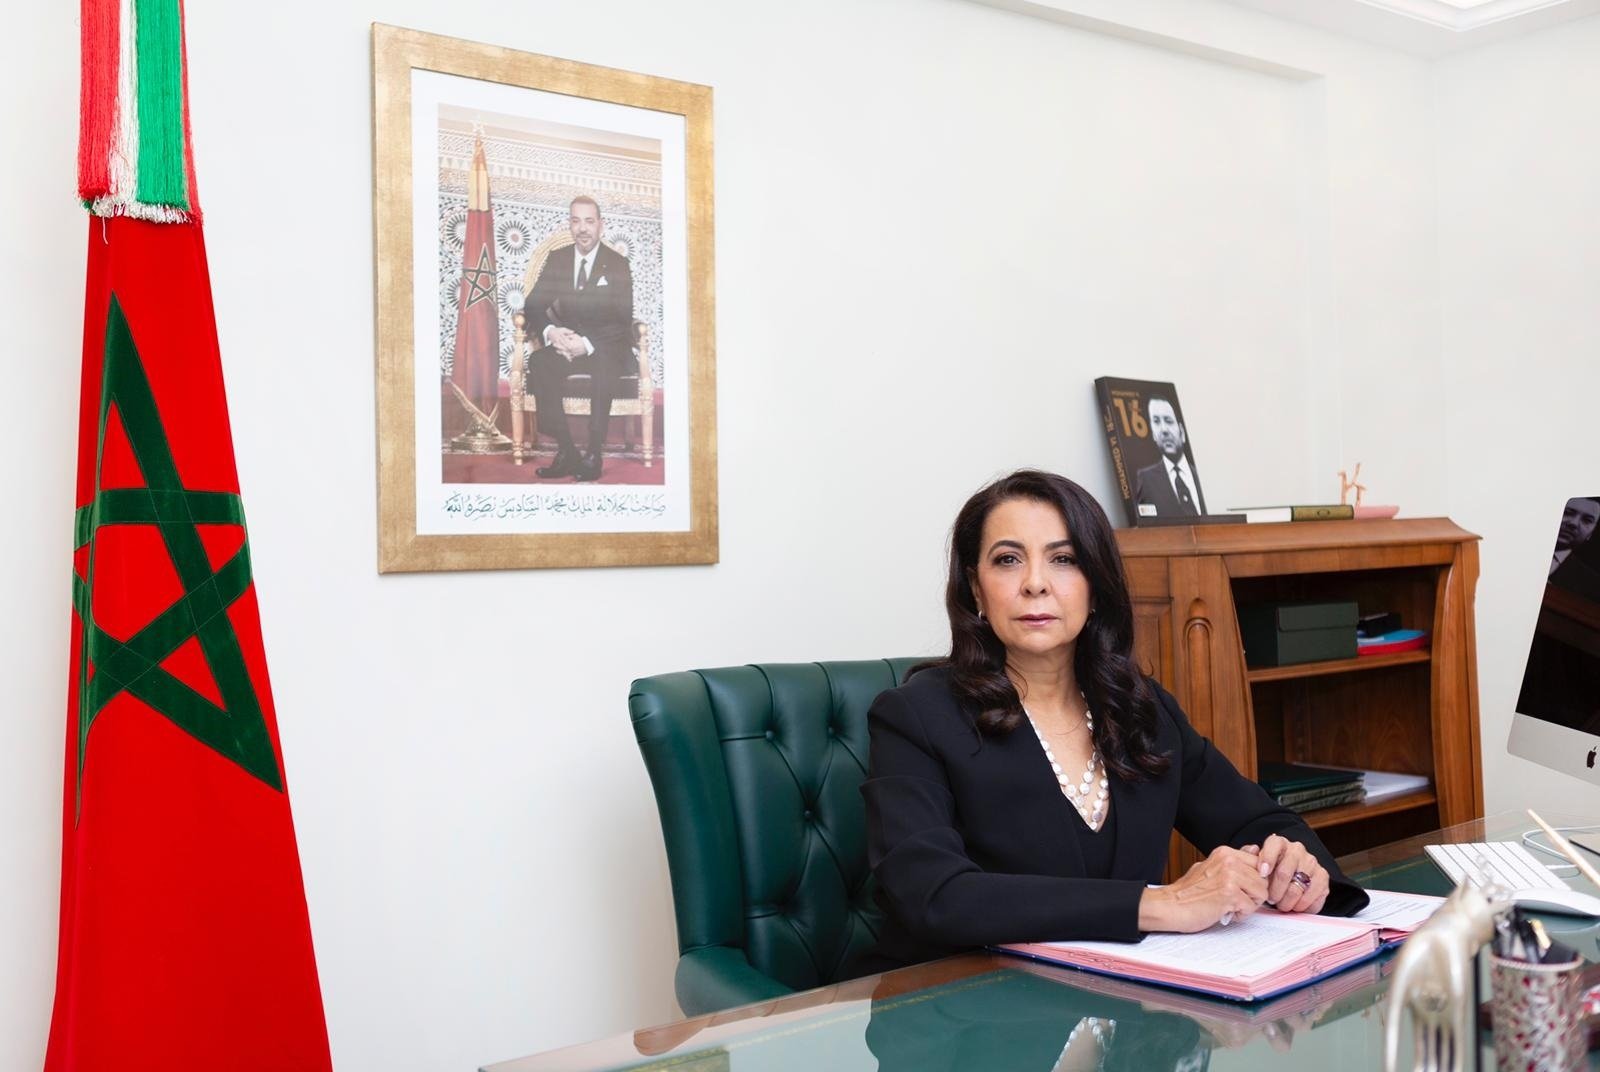 La embajadora de Marruecos vuelve a Madrid (y el de Argelia sale)